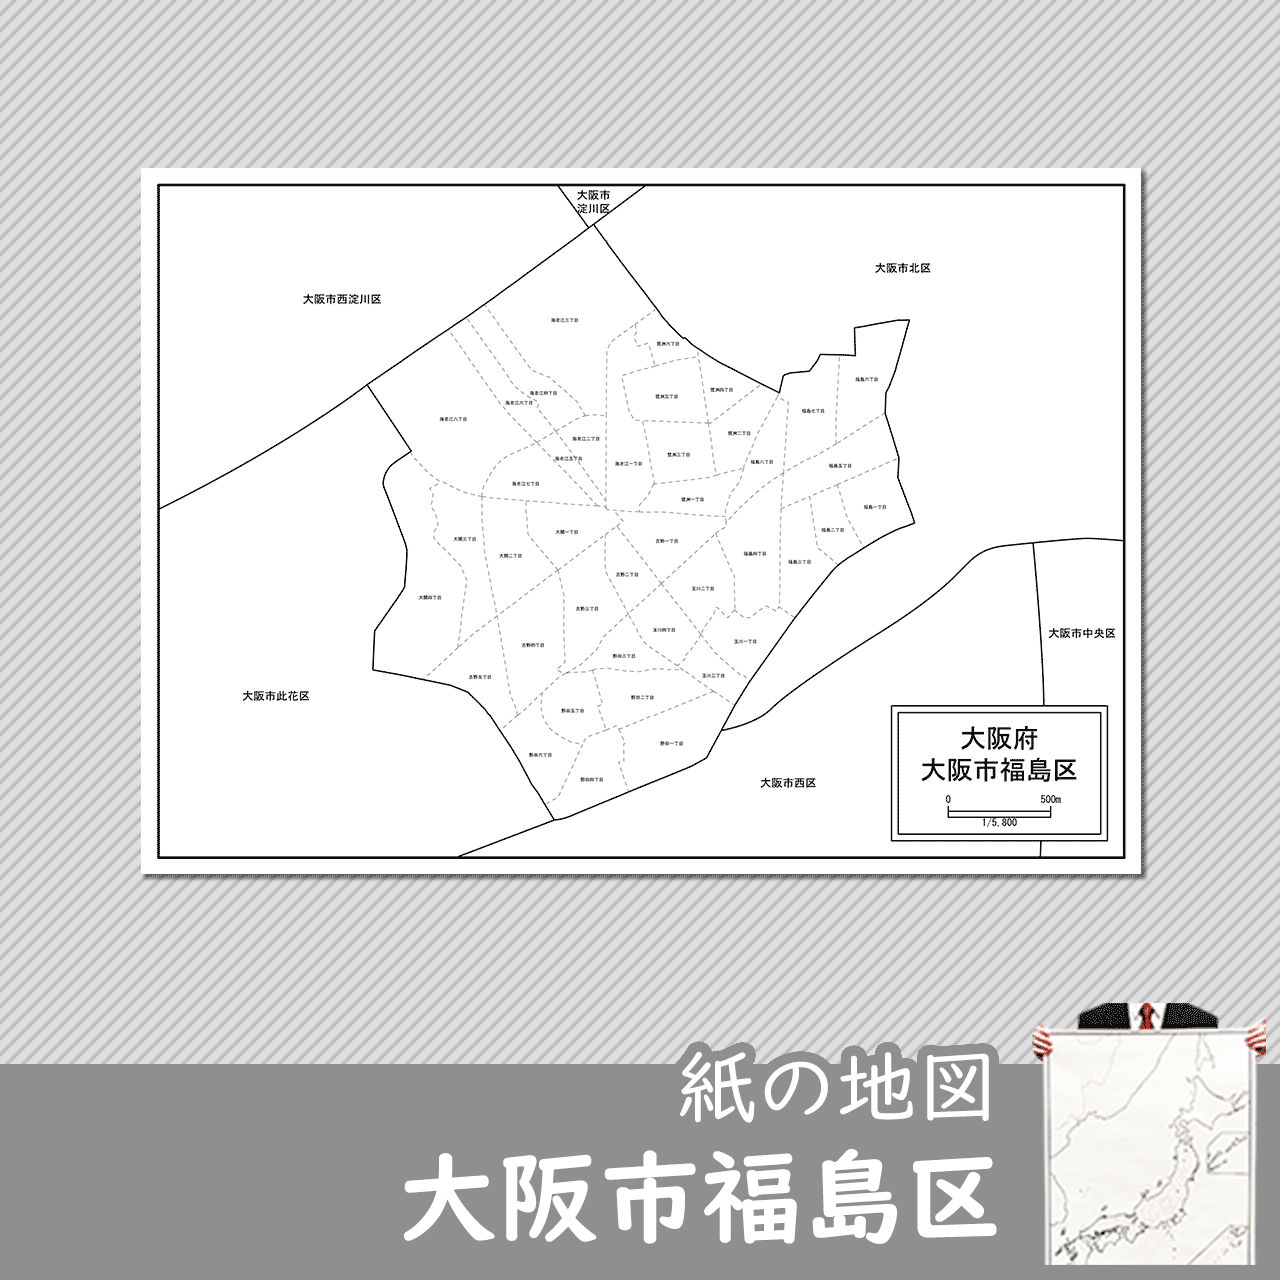 大阪市福島区の紙の白地図のサムネイル